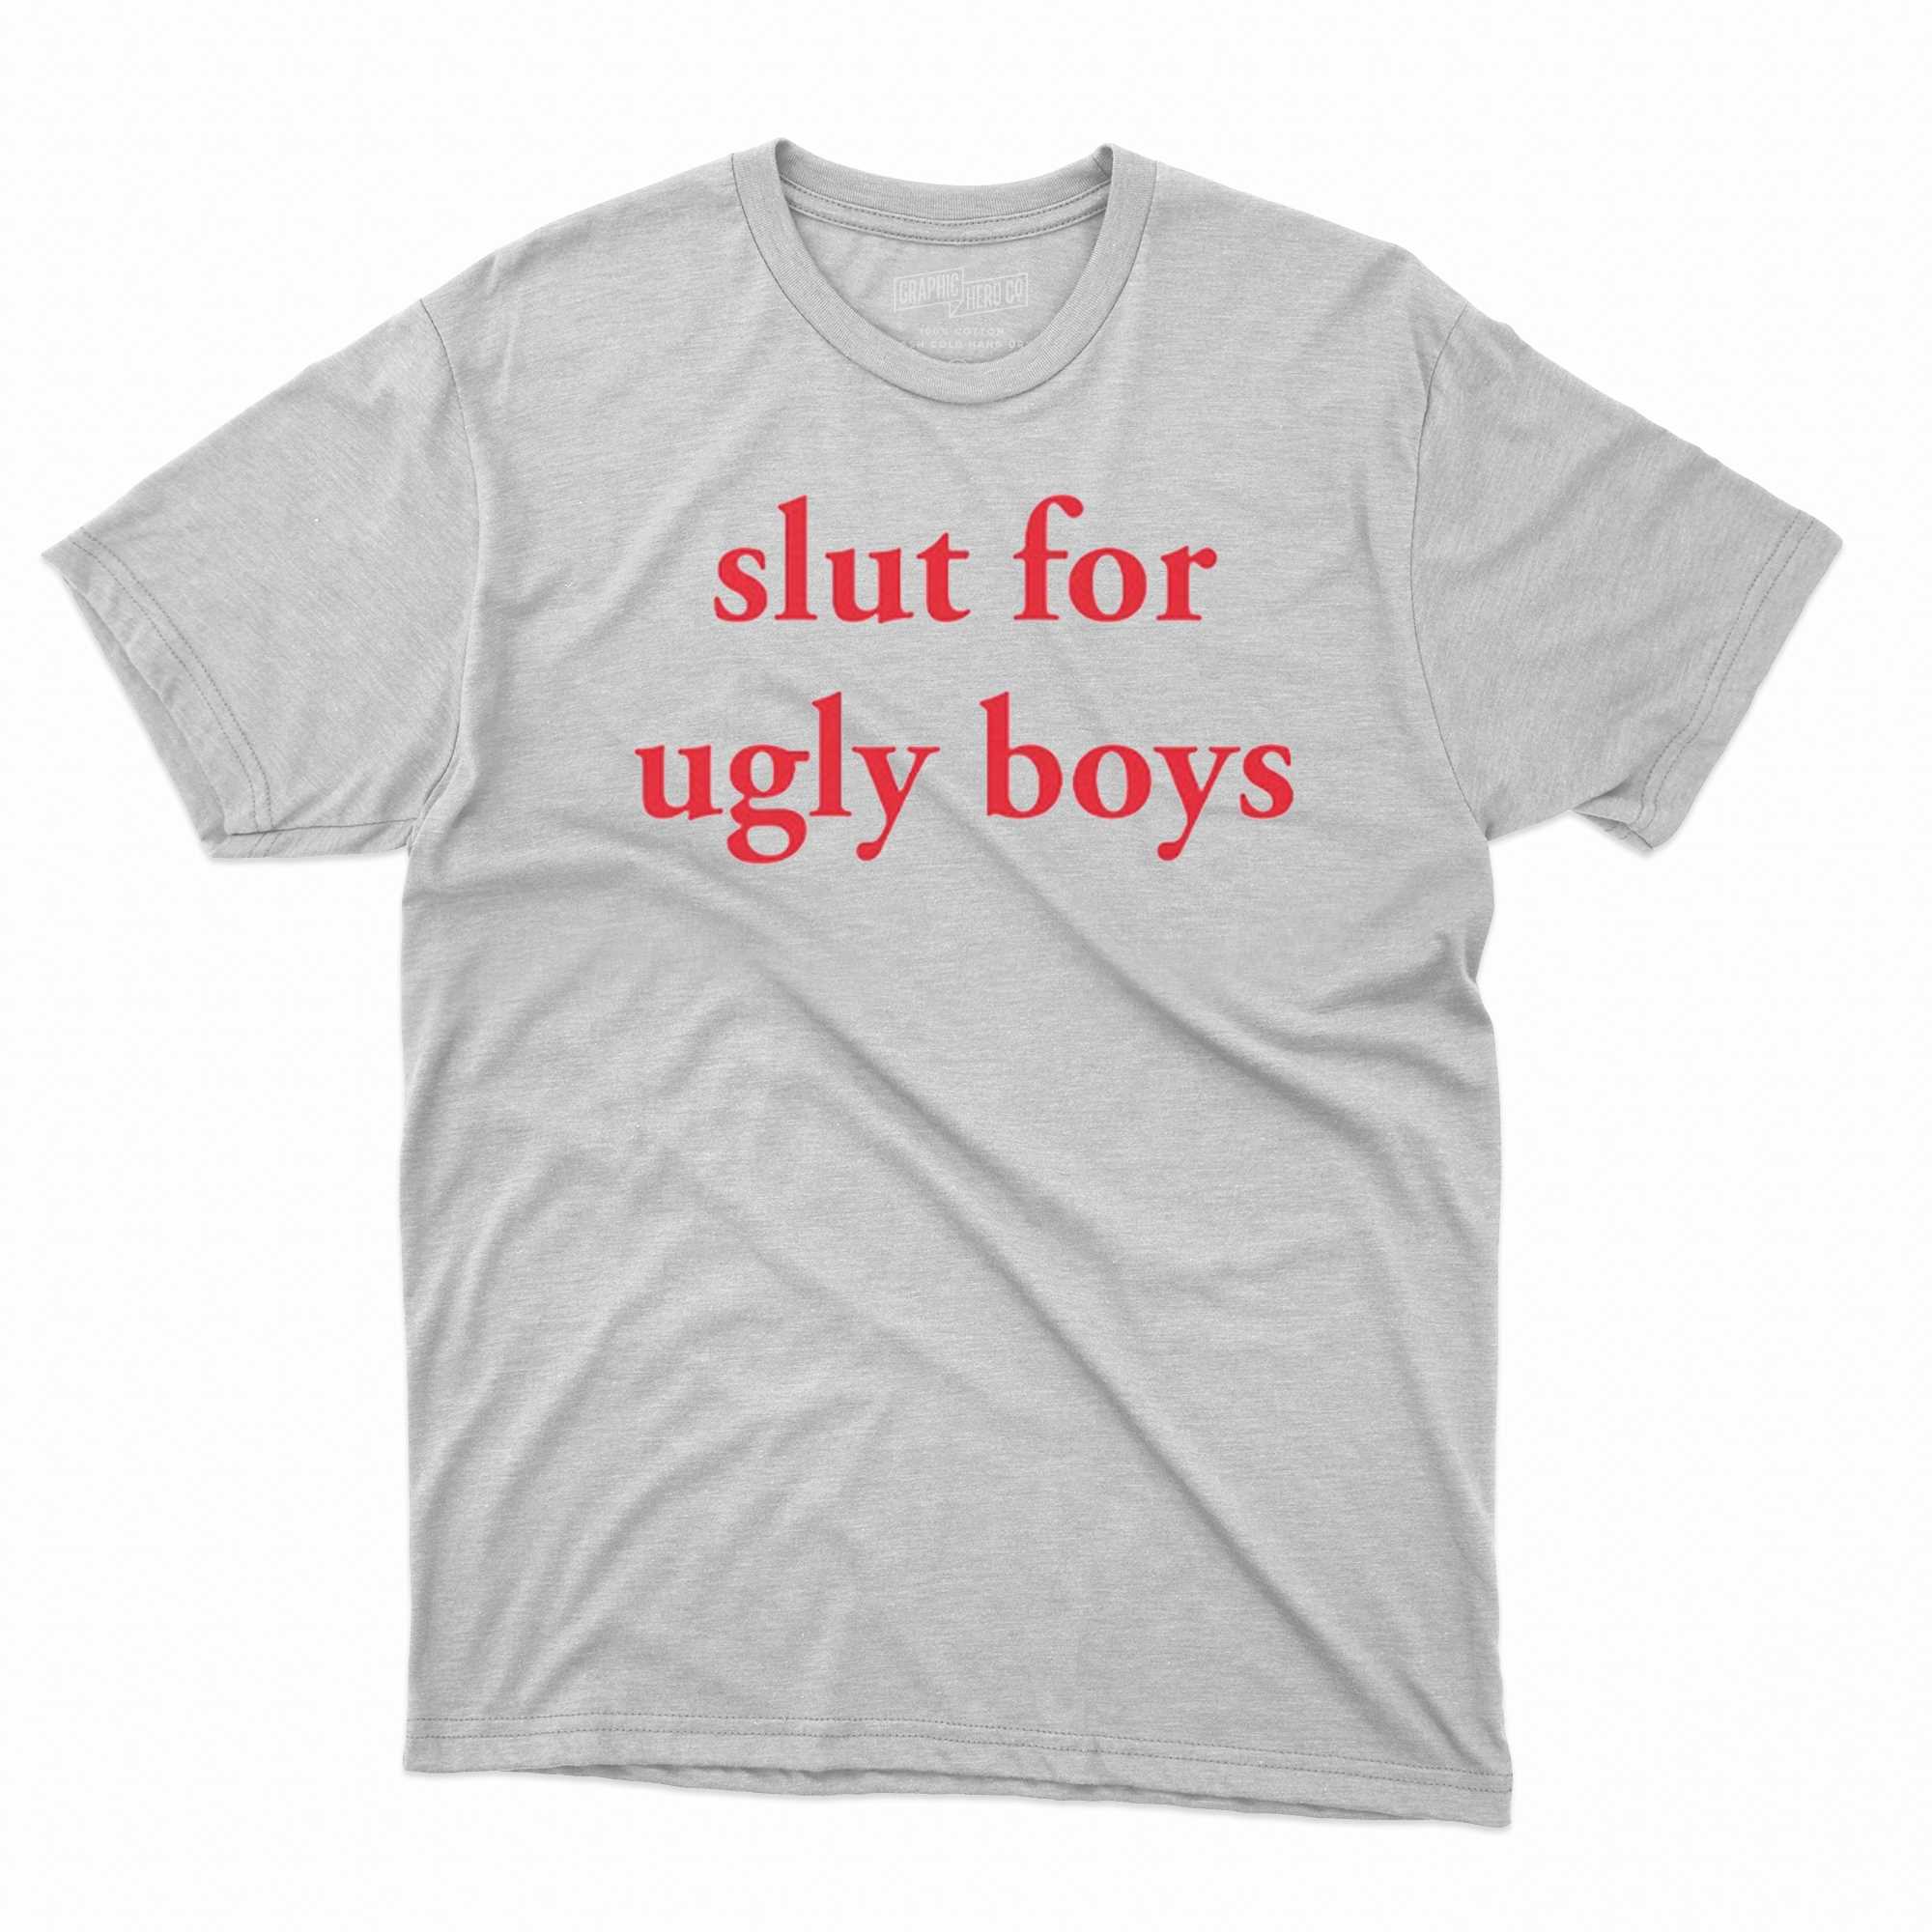 Slut For Ugly Boys T-shirt - Shibtee Clothing